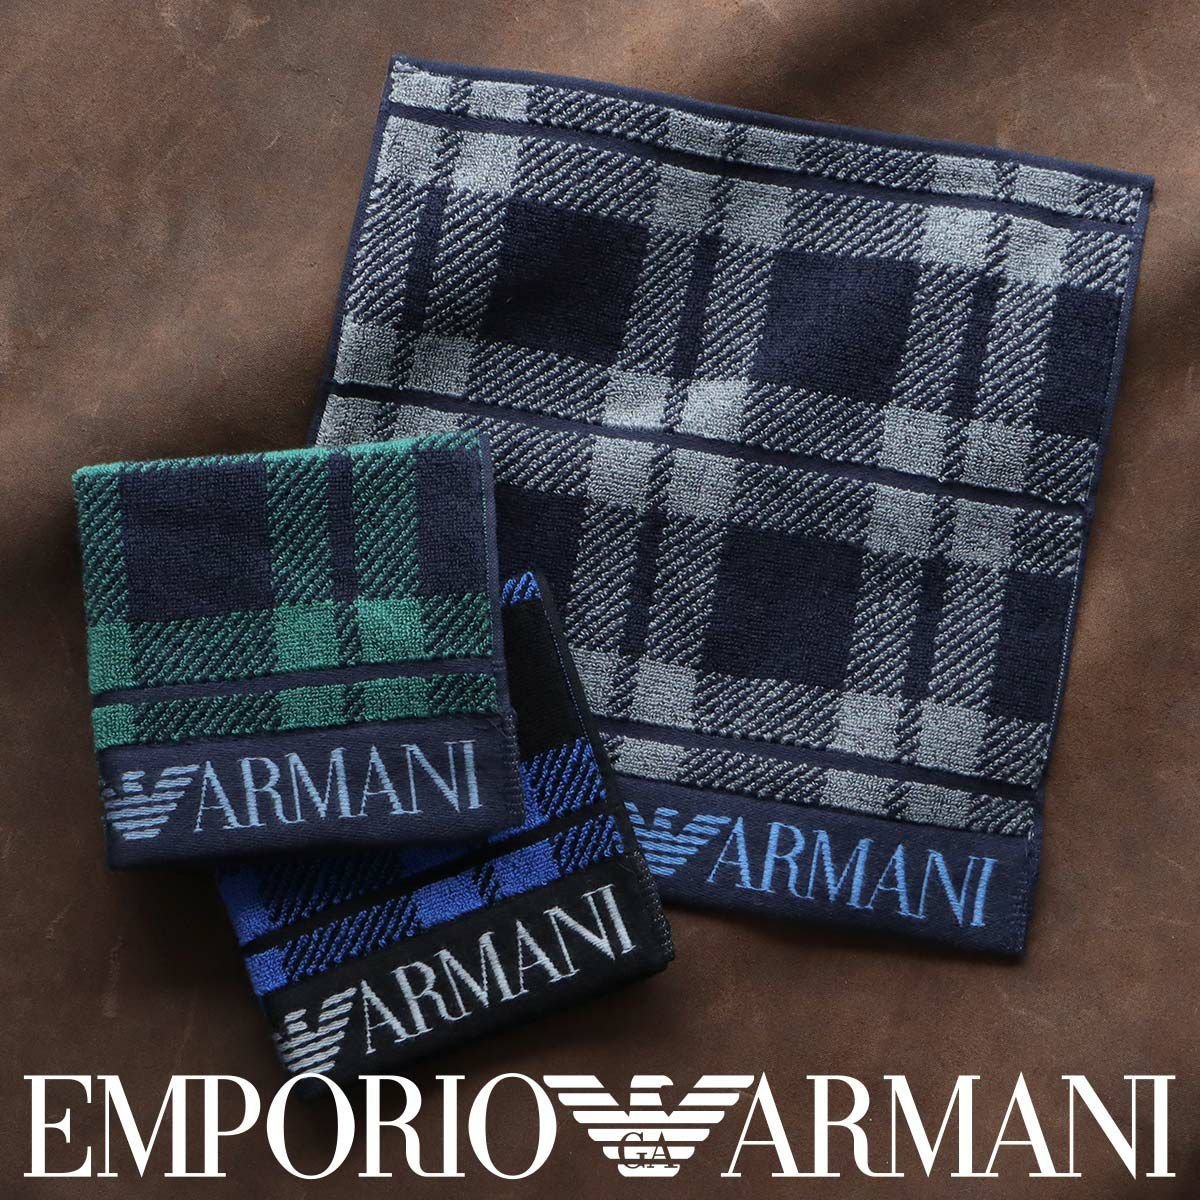 EMPORIO ARMANI EAイーグル チェック柄 綿100% メンズ ミニタオル ナイガイ ファッション雑貨 ハンカチ・ハンドタオル